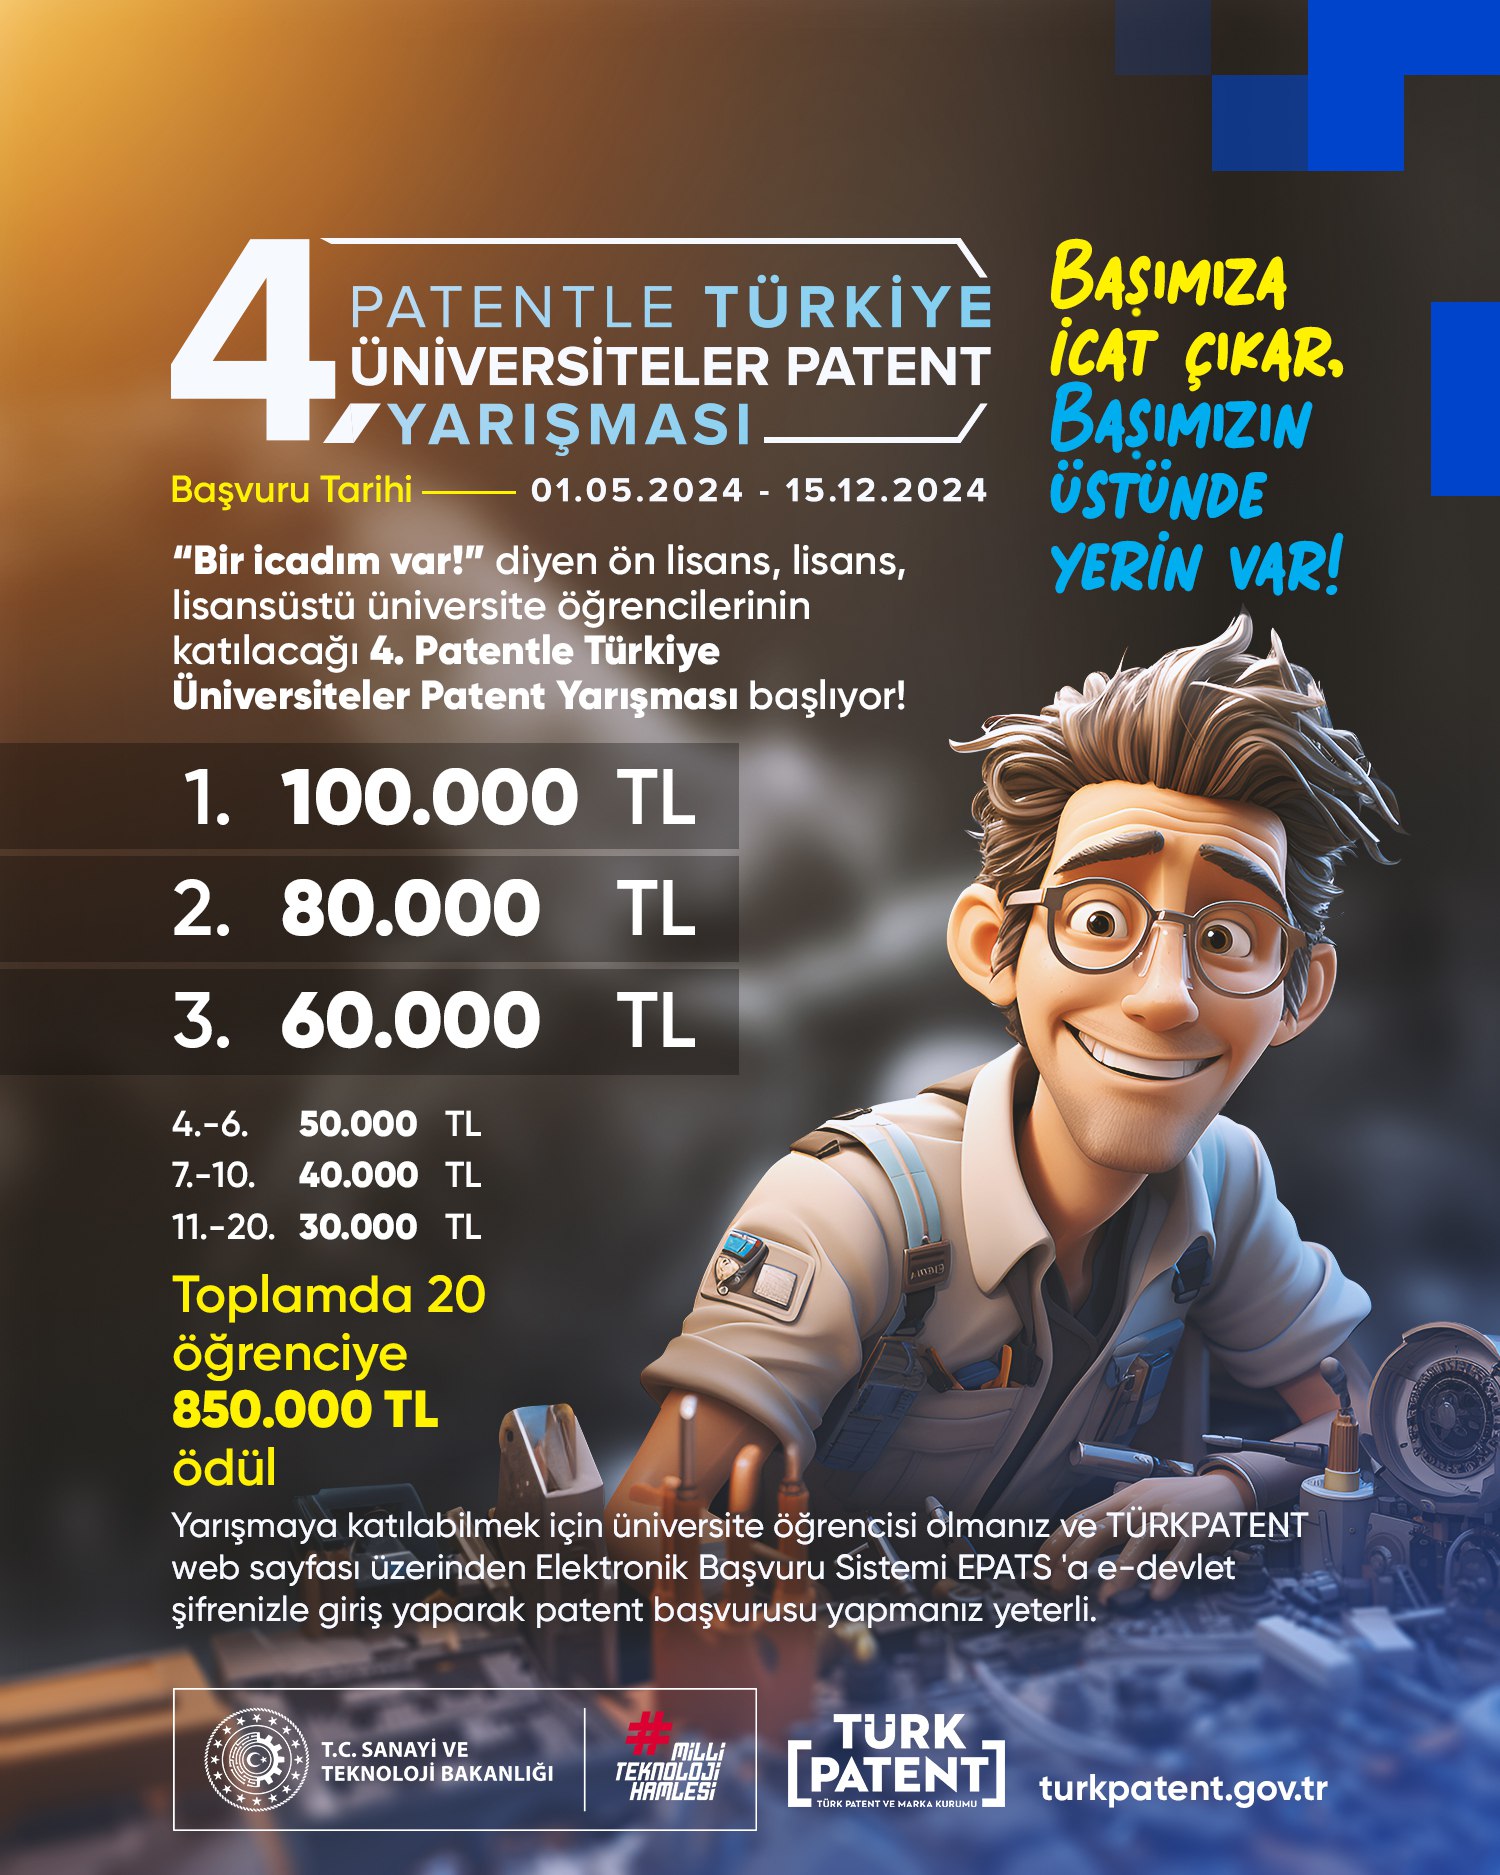 Patentle Türkiye-Üniversiteler Patent Yarışması’nın başvuruları başladı